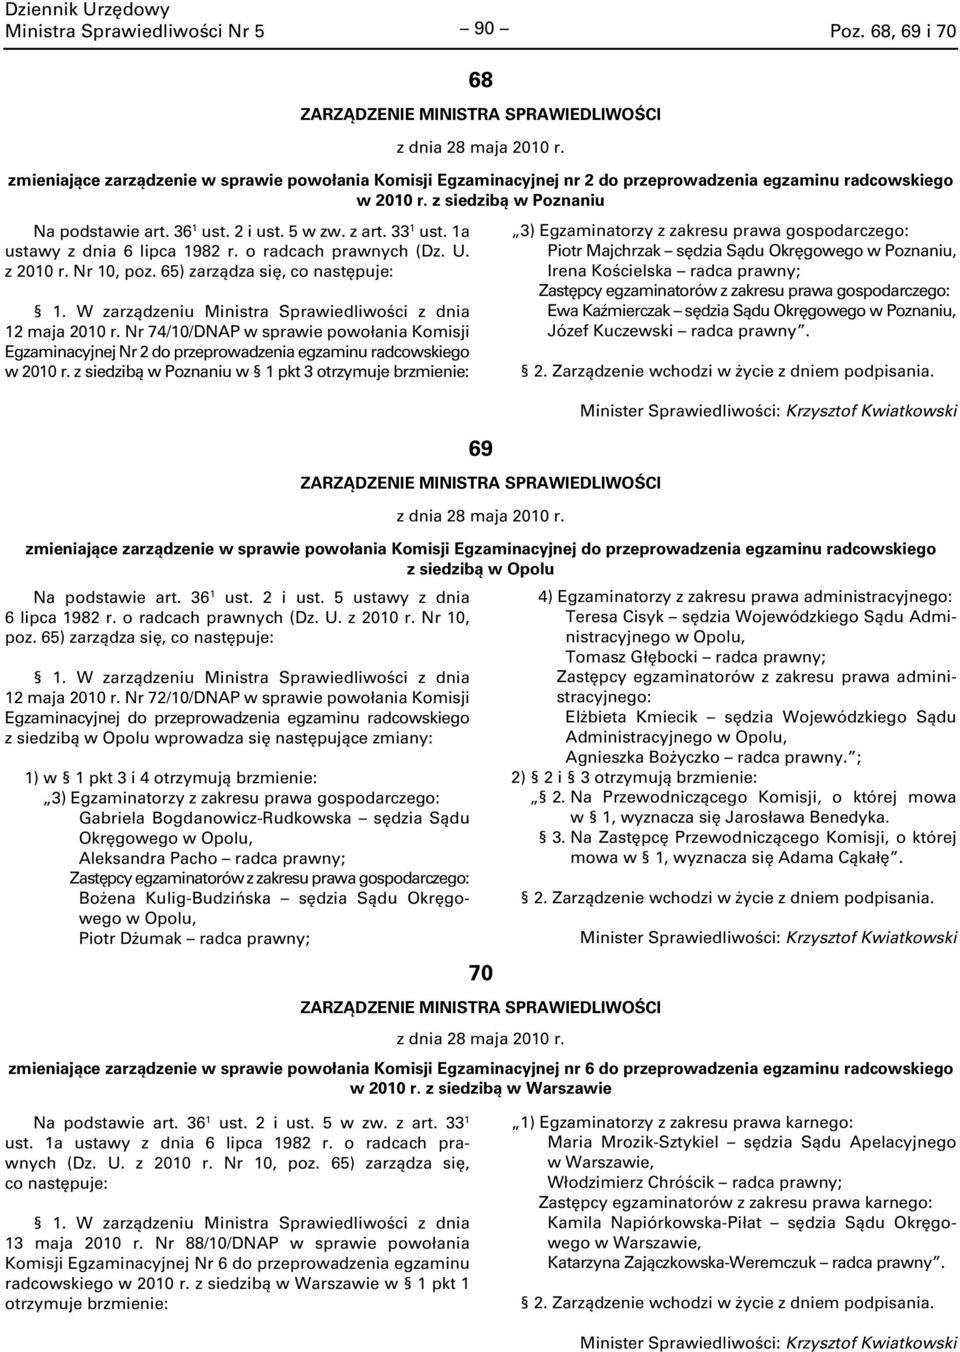 65) zarządza się, co następuje: 2 maja 200 r. Nr 74/0/DNAP w sprawie powołania Komisji Egzaminacyjnej Nr 2 do przeprowadzenia egzaminu radcowskiego w 200 r.